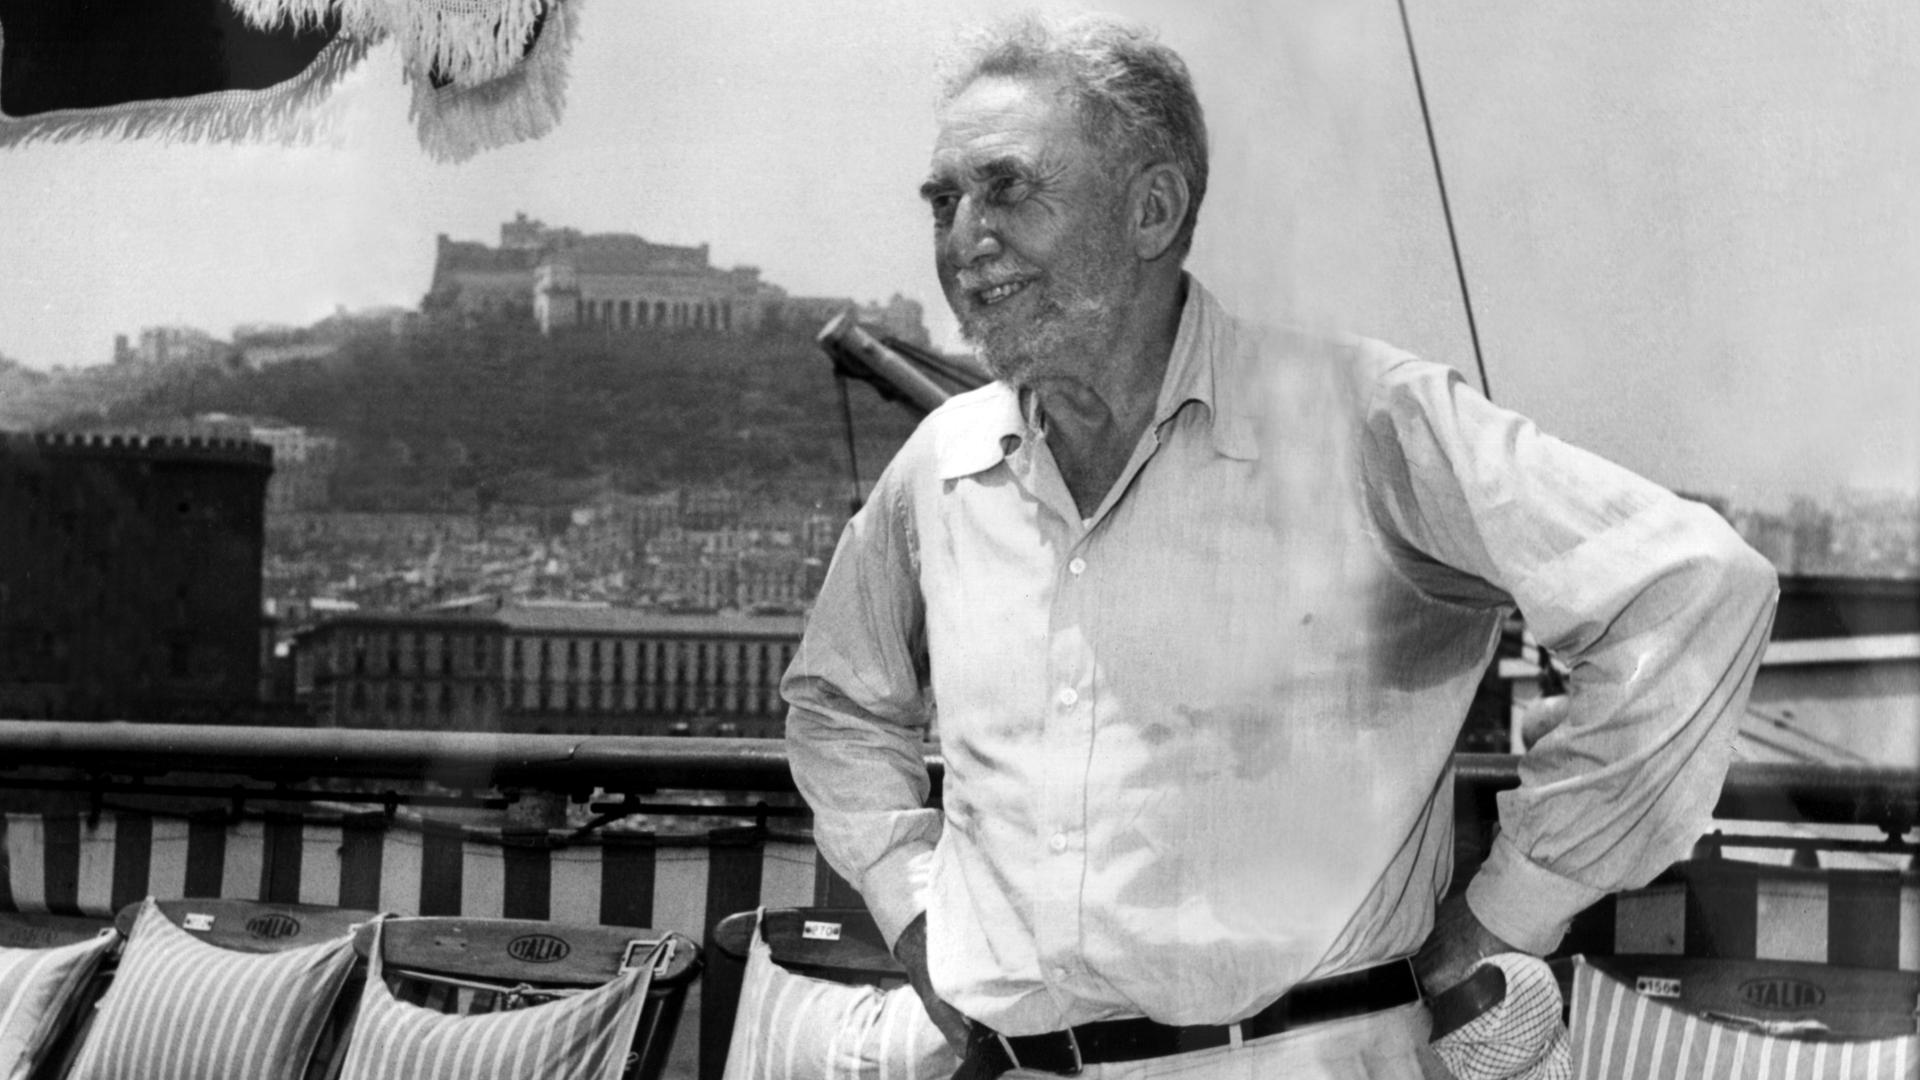 Der Schriftsteller Ezra Pound im Alter von 73 Jahren in Neapel. Er trägt Bart, ein helles Hemd und eine weiße Hose.